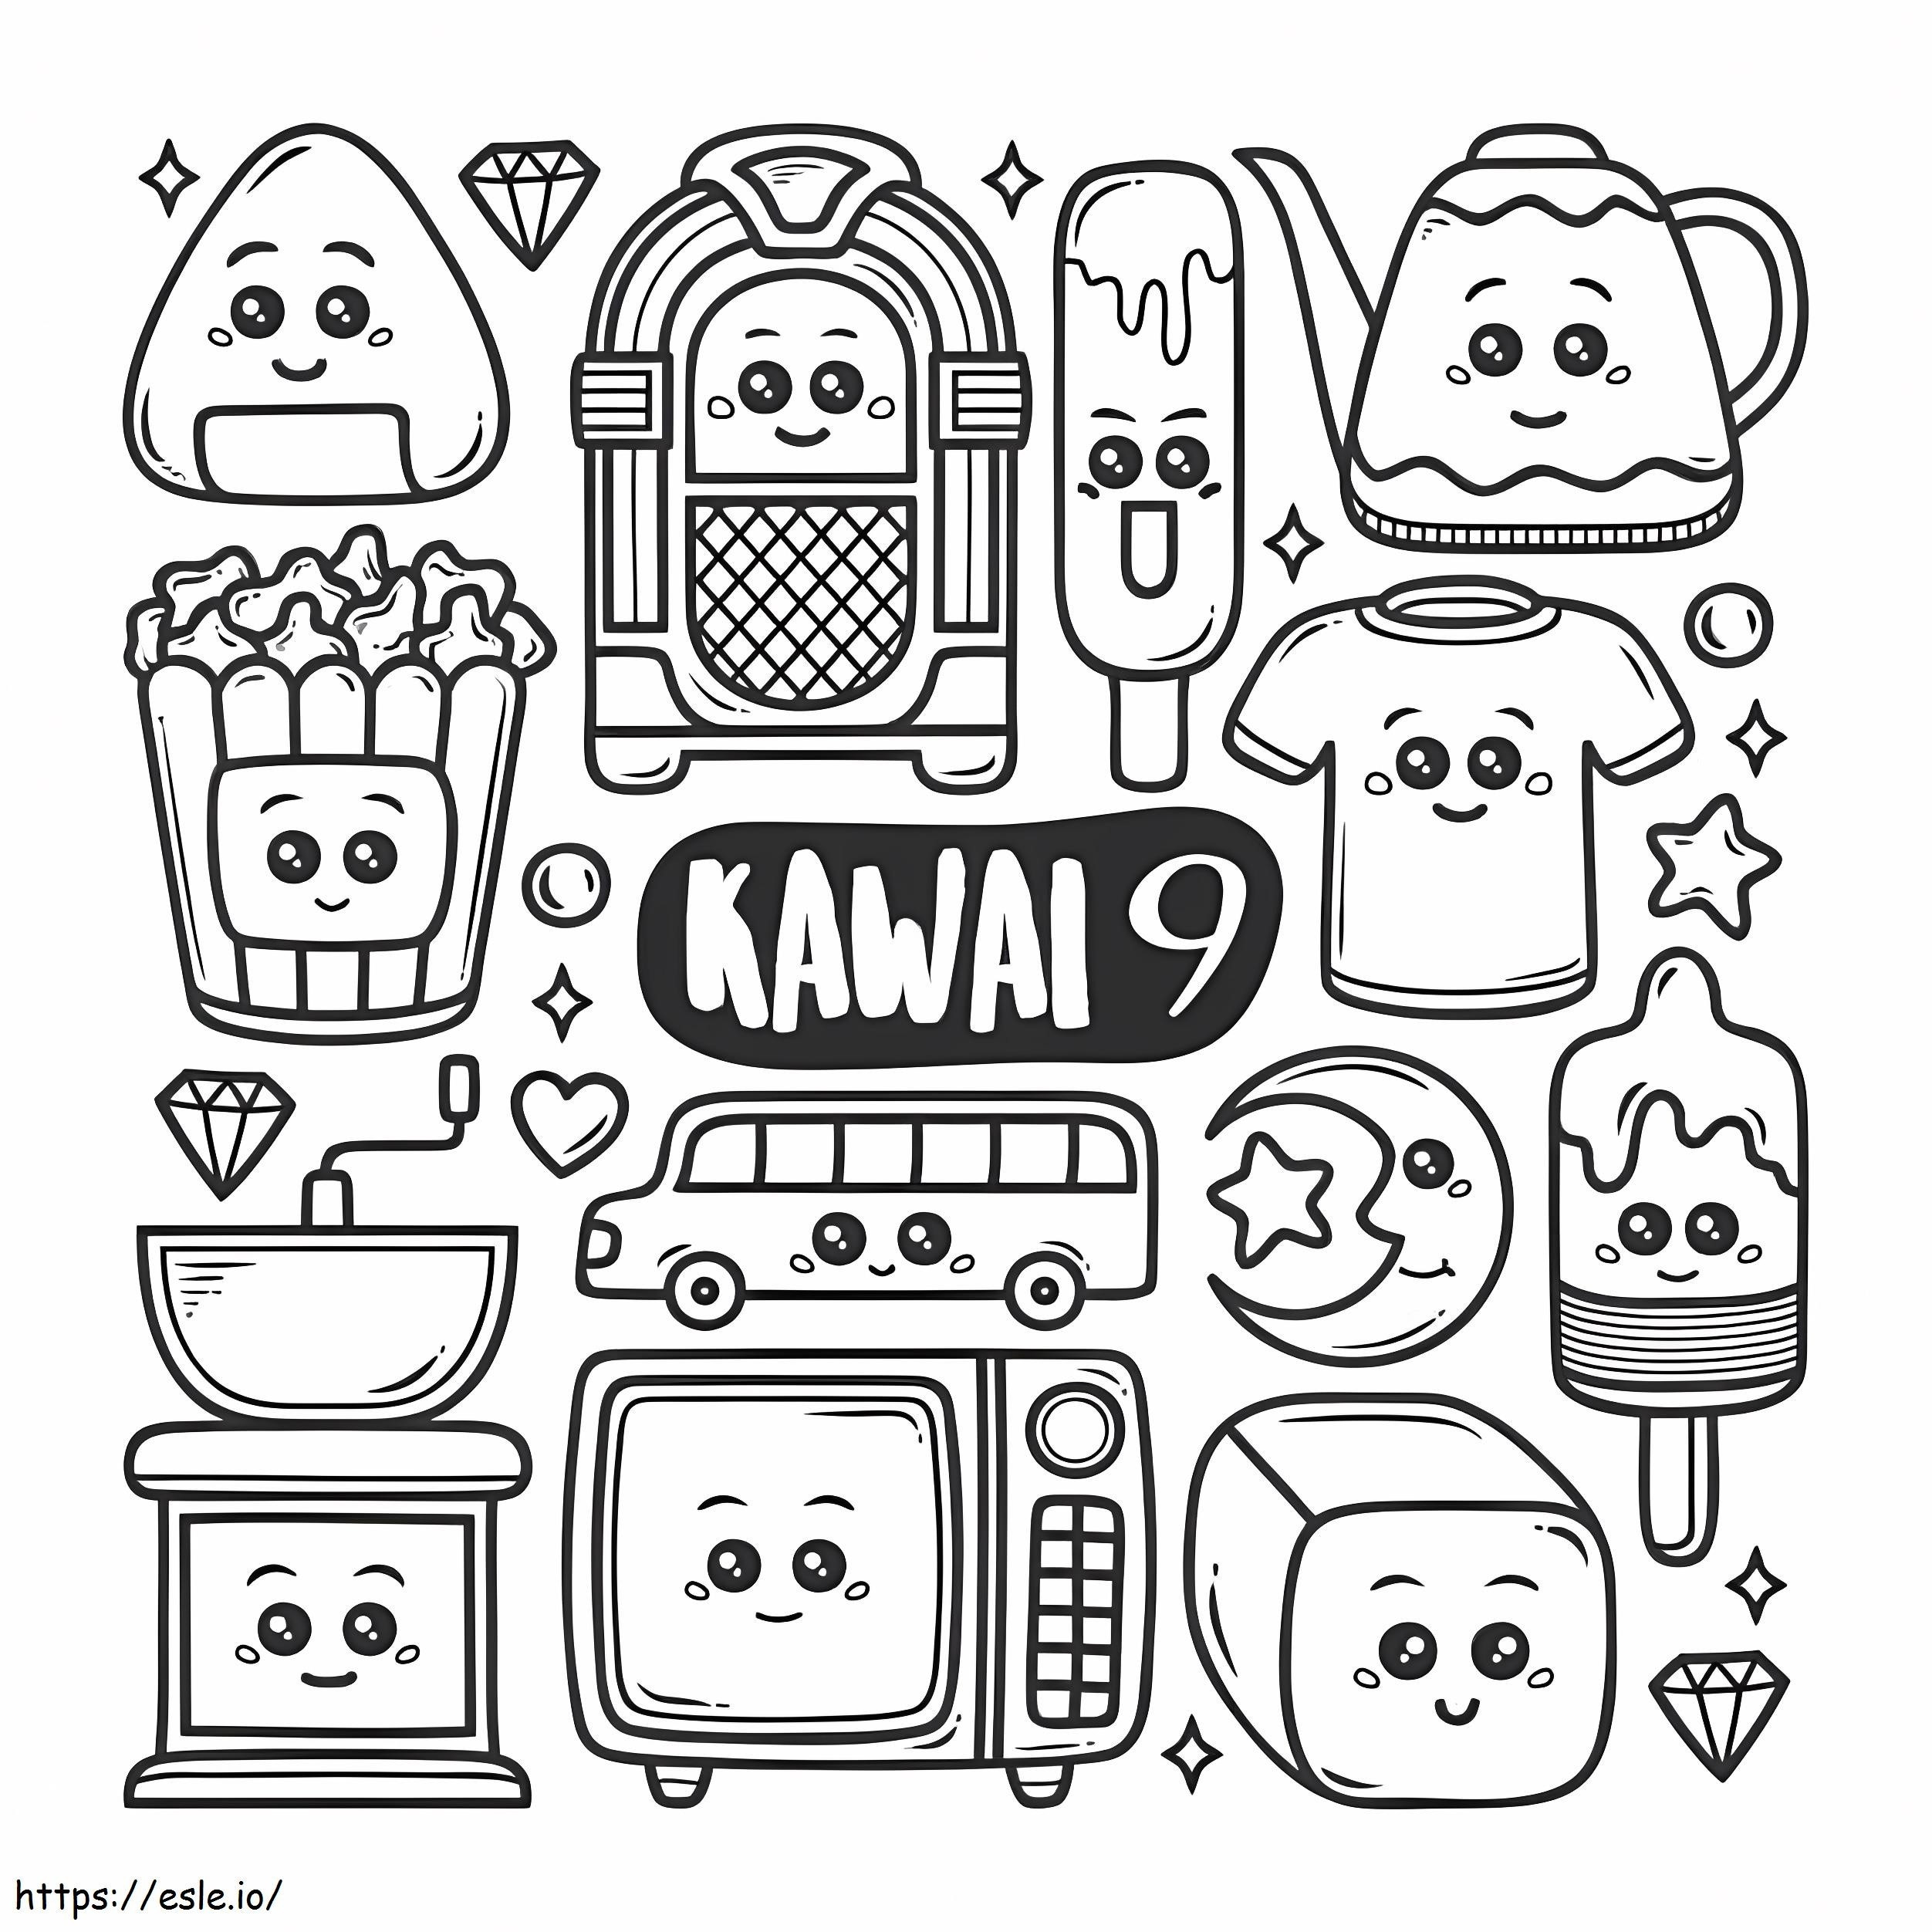 Kawaii-Ästhetik ausmalbilder